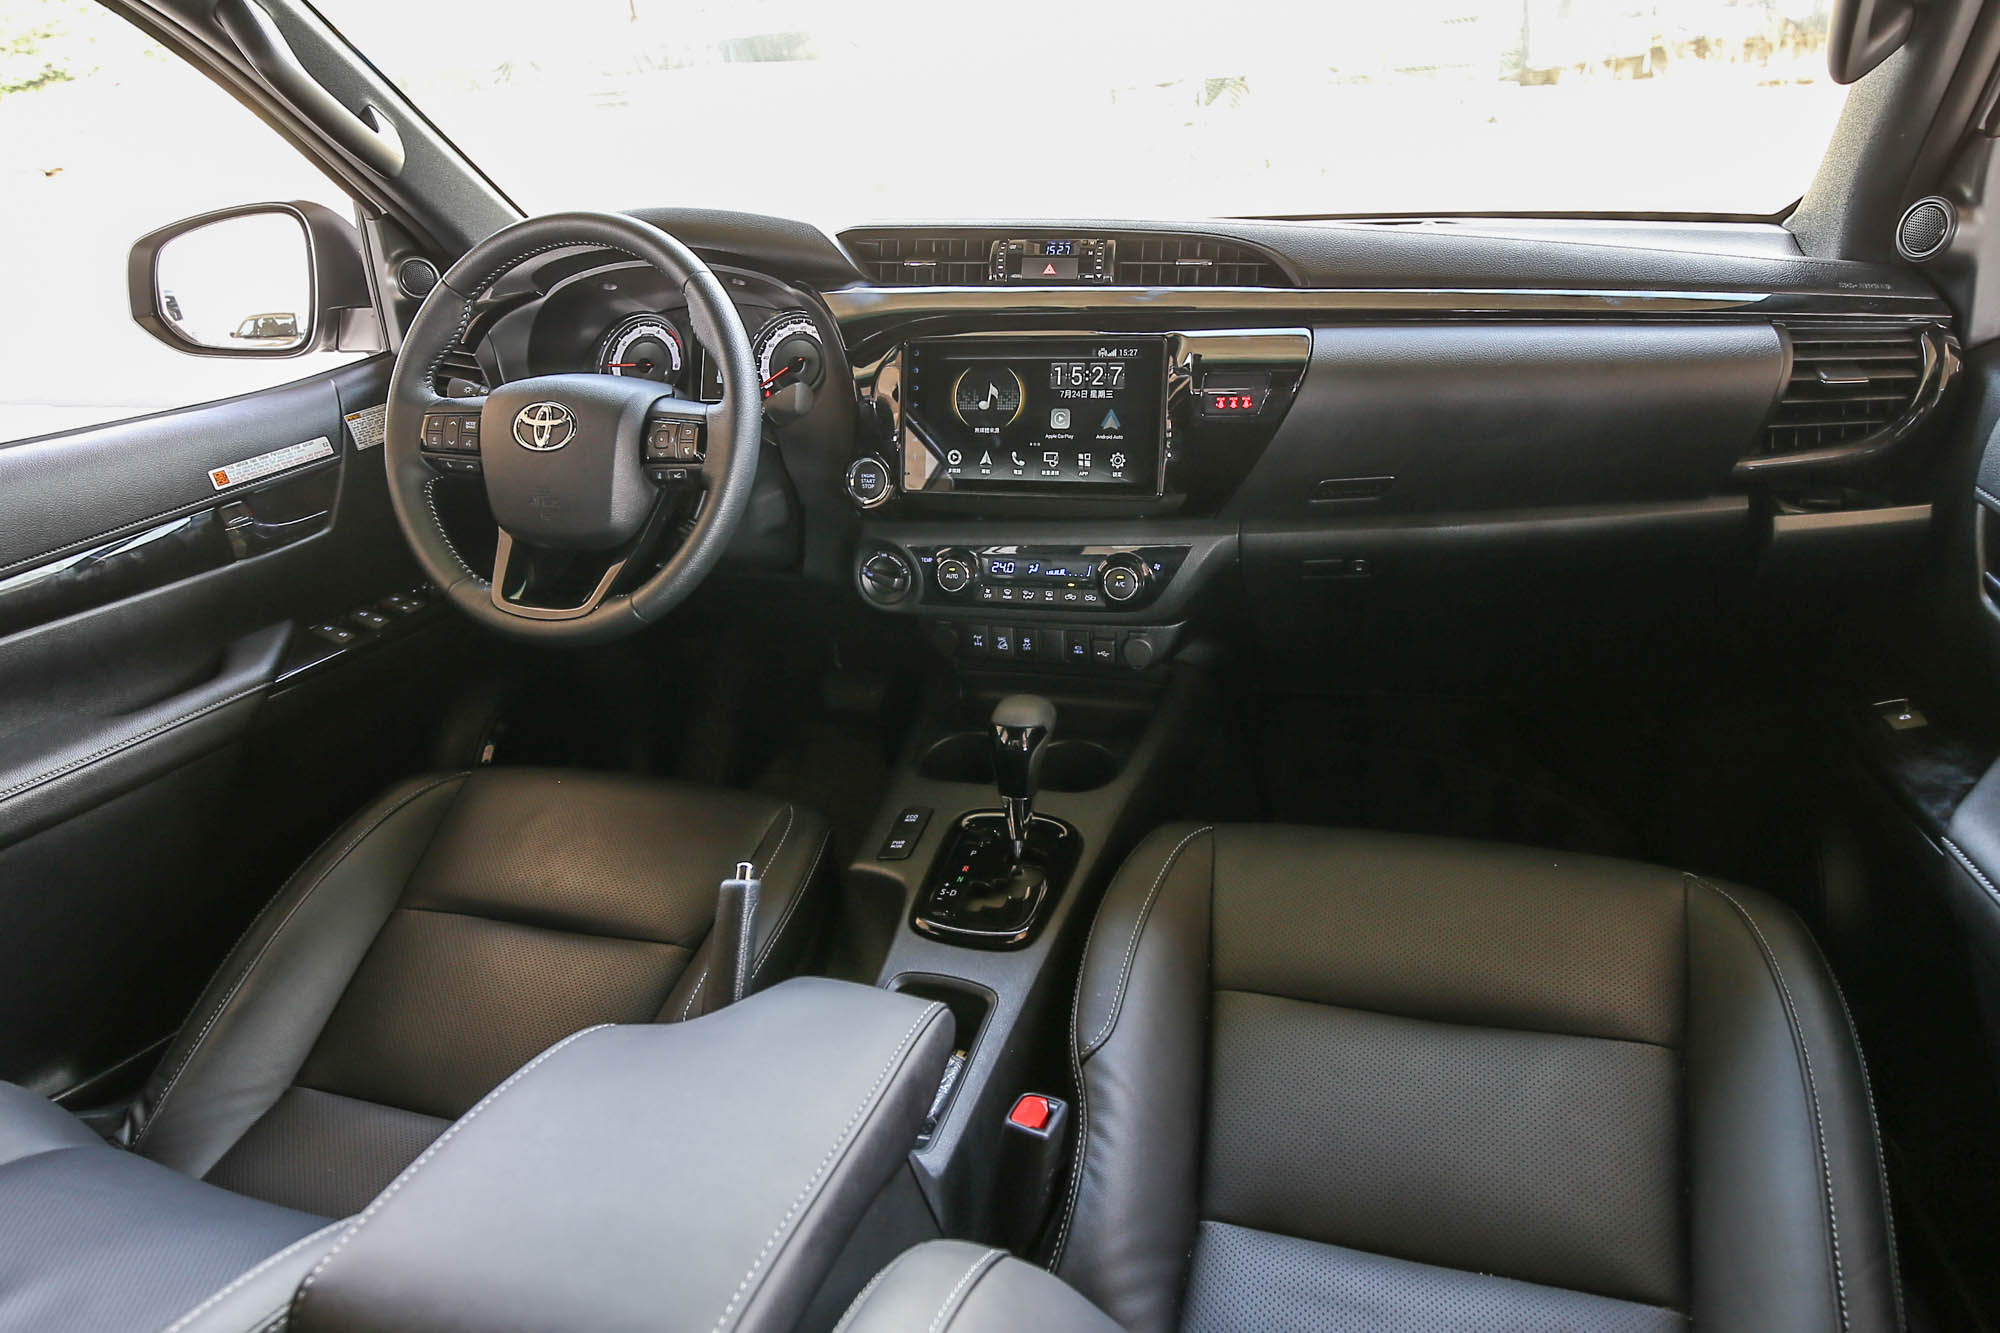 座艙內的風格與 Toyota 一般房車的設計風格大抵相同。